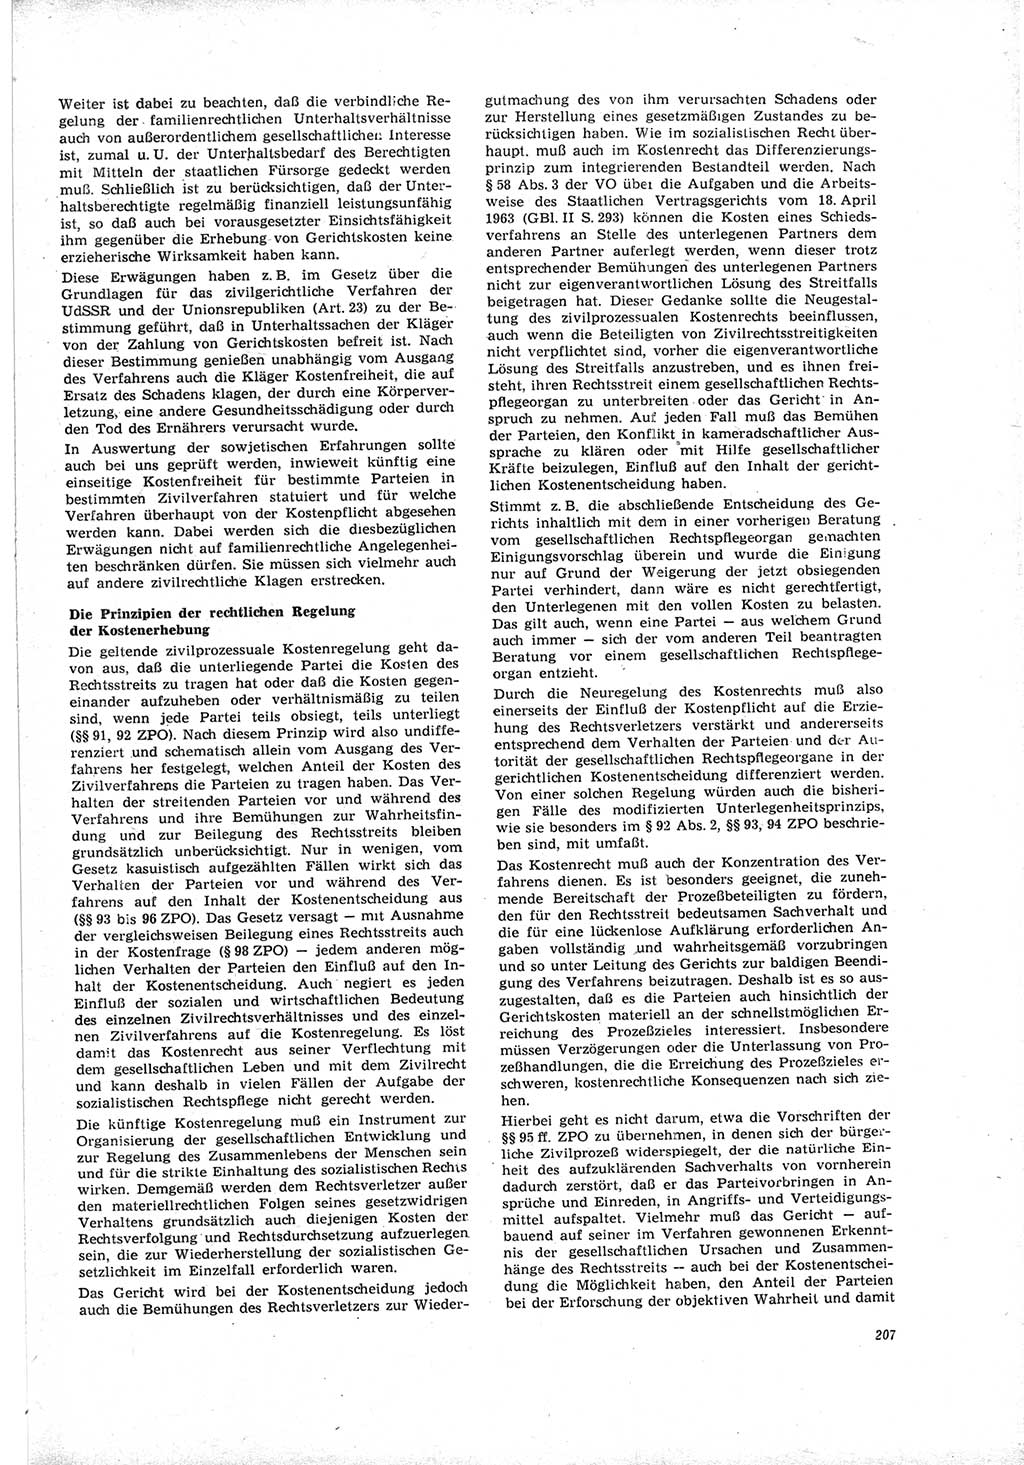 Neue Justiz (NJ), Zeitschrift für Recht und Rechtswissenschaft [Deutsche Demokratische Republik (DDR)], 19. Jahrgang 1965, Seite 207 (NJ DDR 1965, S. 207)